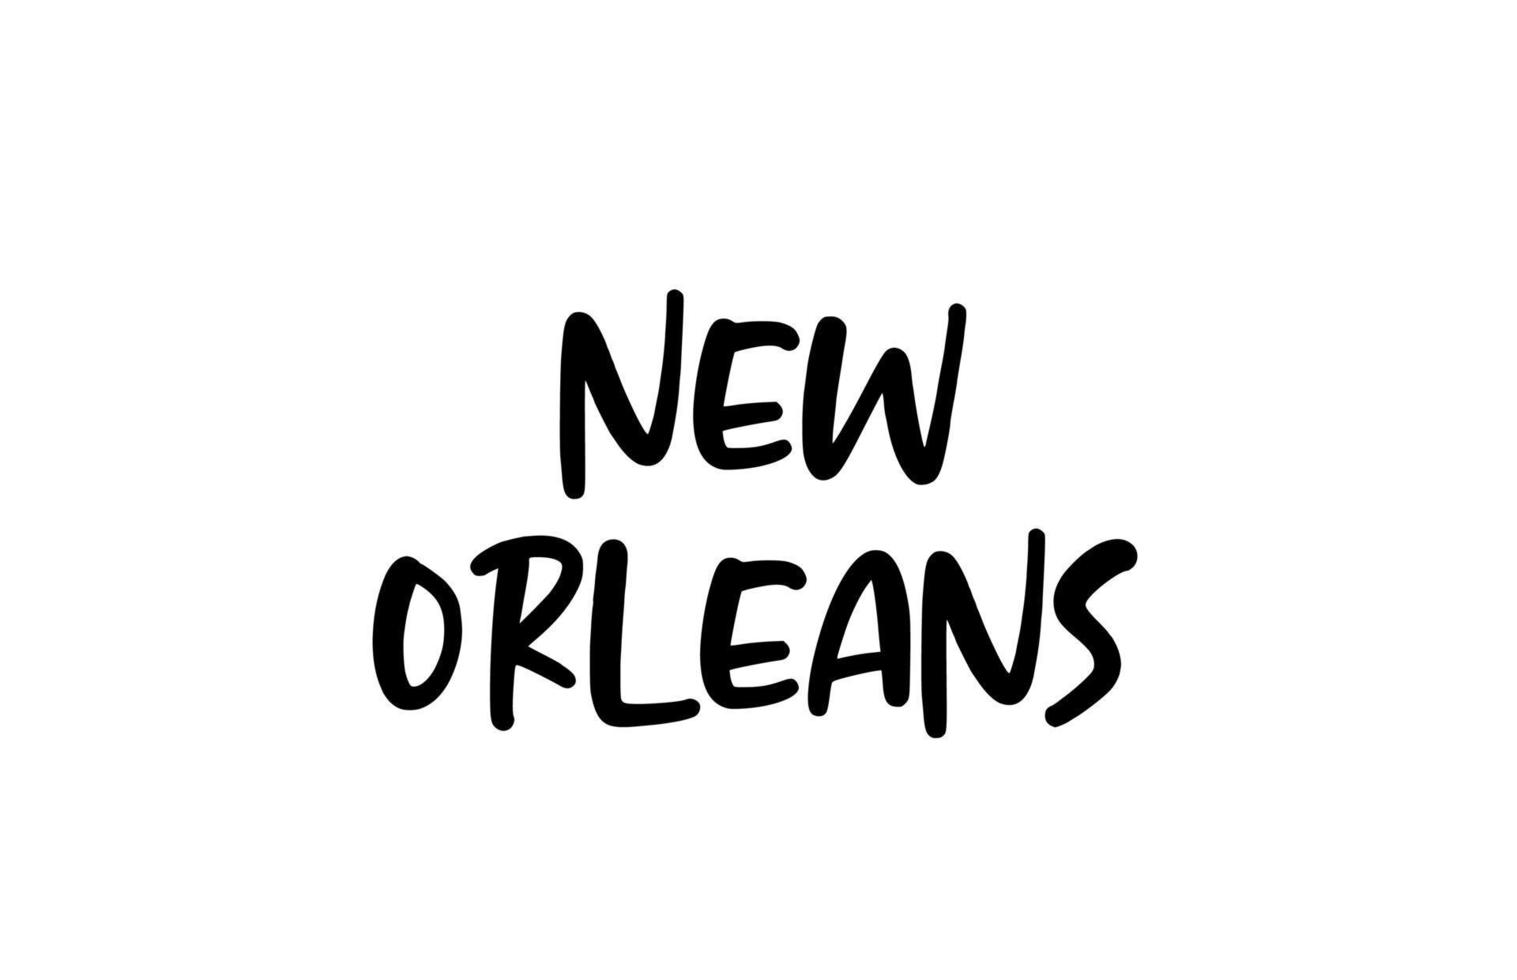 New Orleans City tipografia scritta a mano parola testo scritte a mano. testo di calligrafia moderna. colore nero vettore